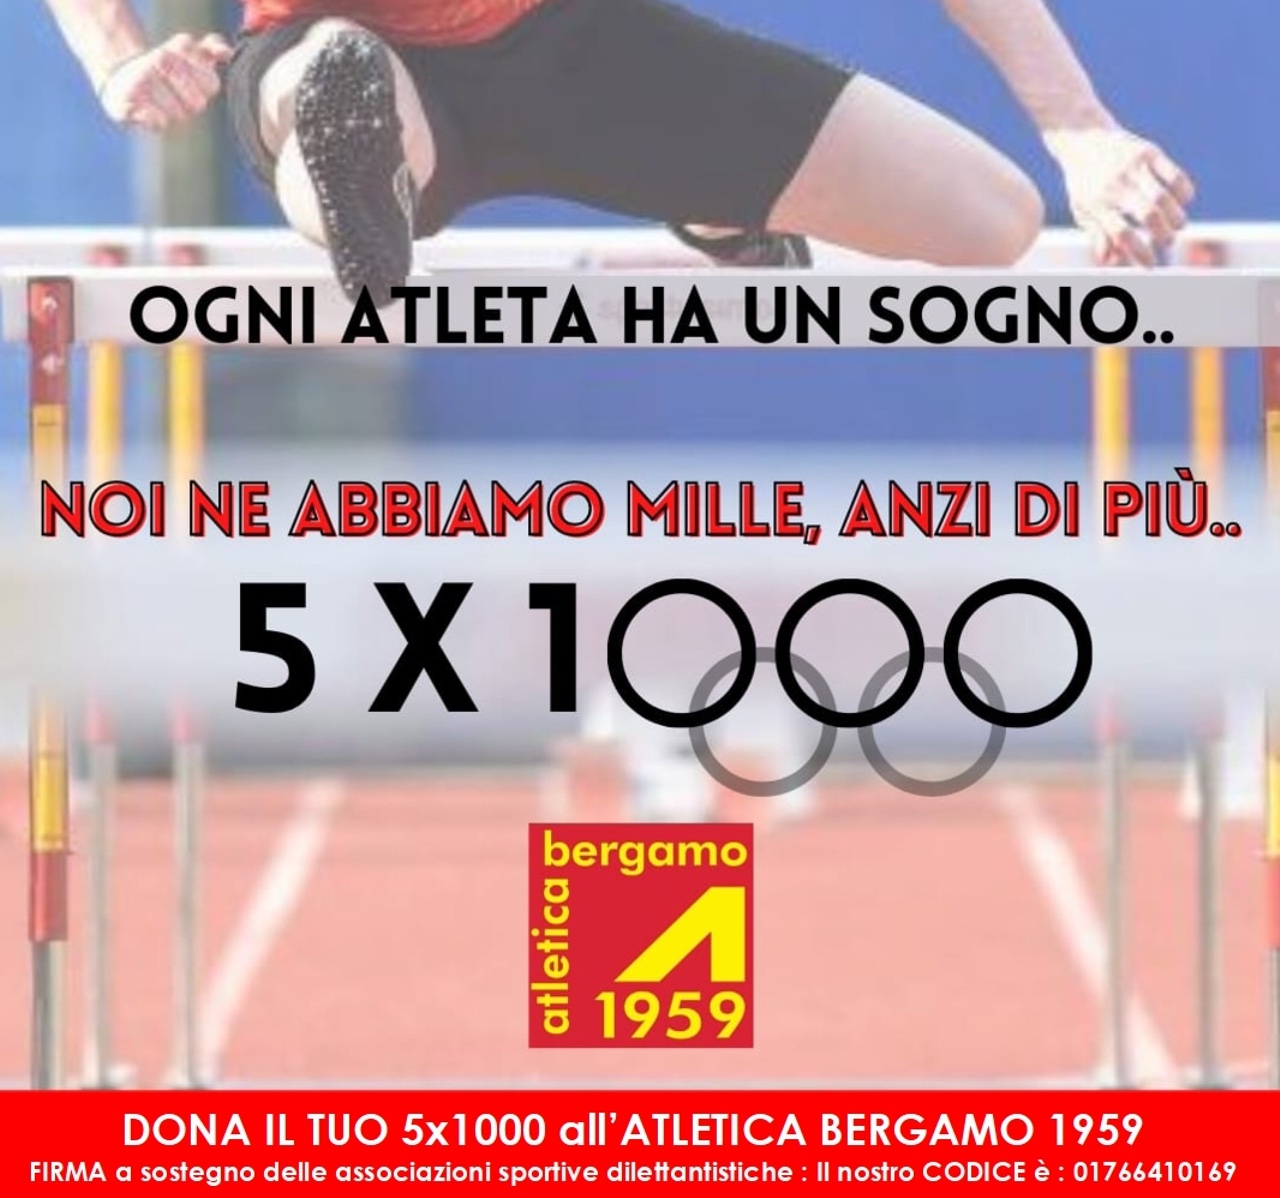 Dona il tuo 5x1000 ad Atletica Bergamo 1959